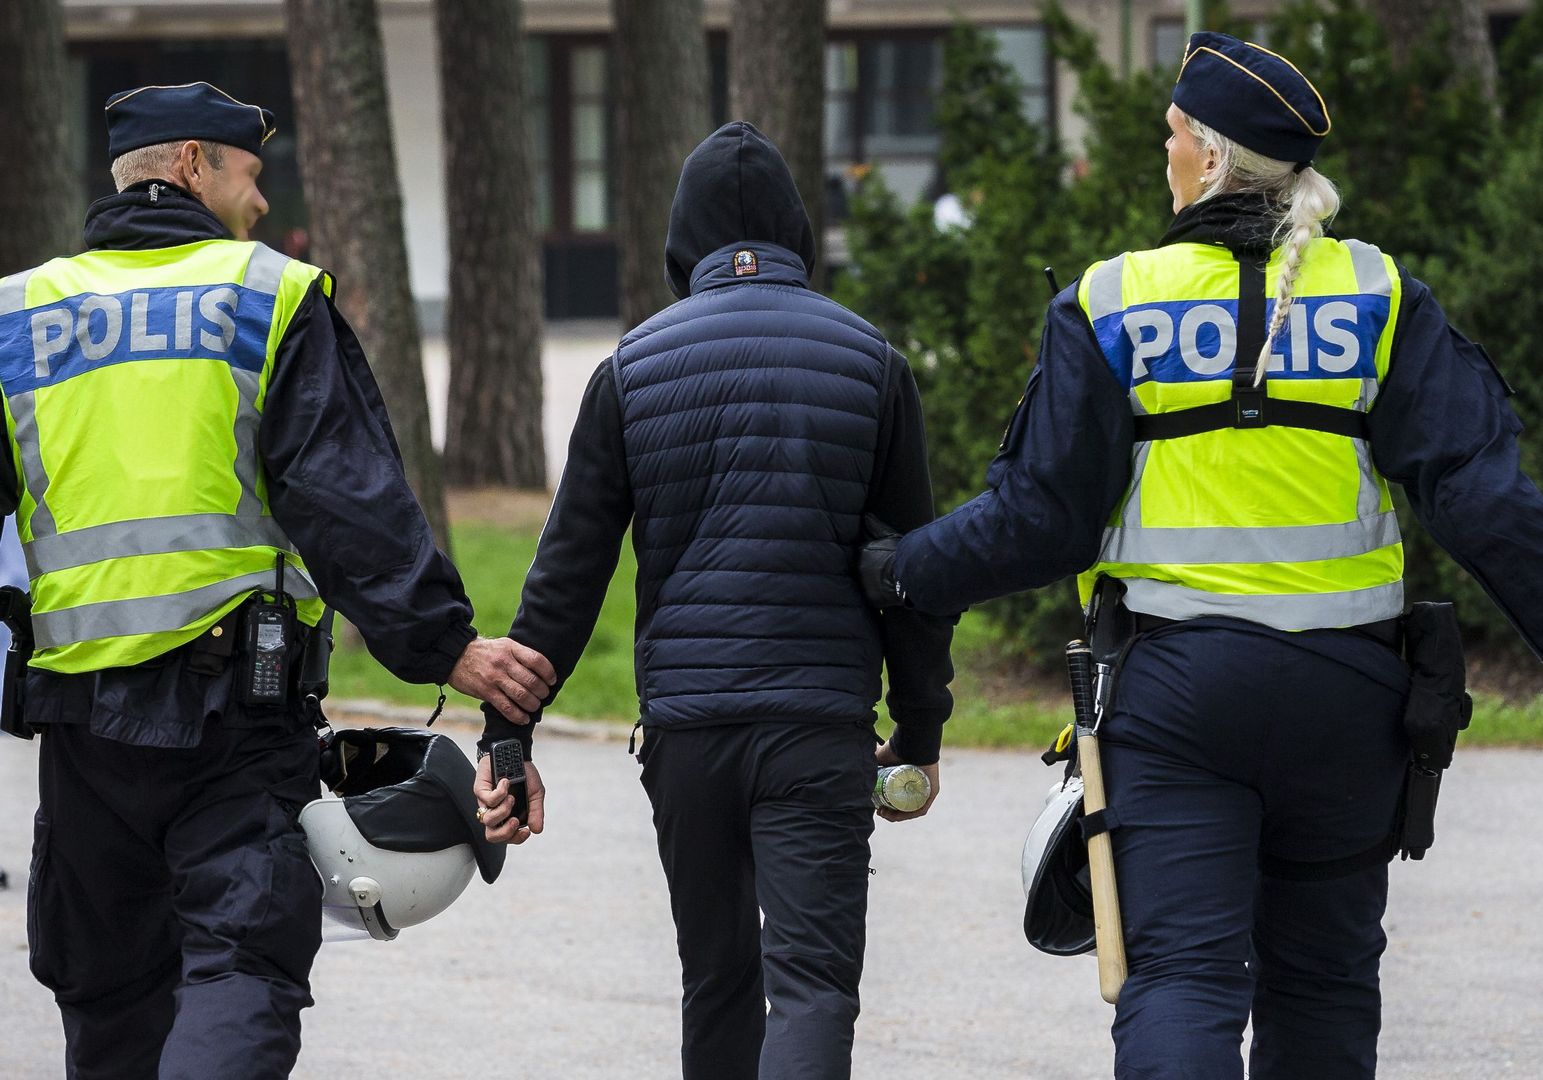 Wstrząsająca zbrodnia 20-latka ze Szwecji. Wynajął się jako opiekun